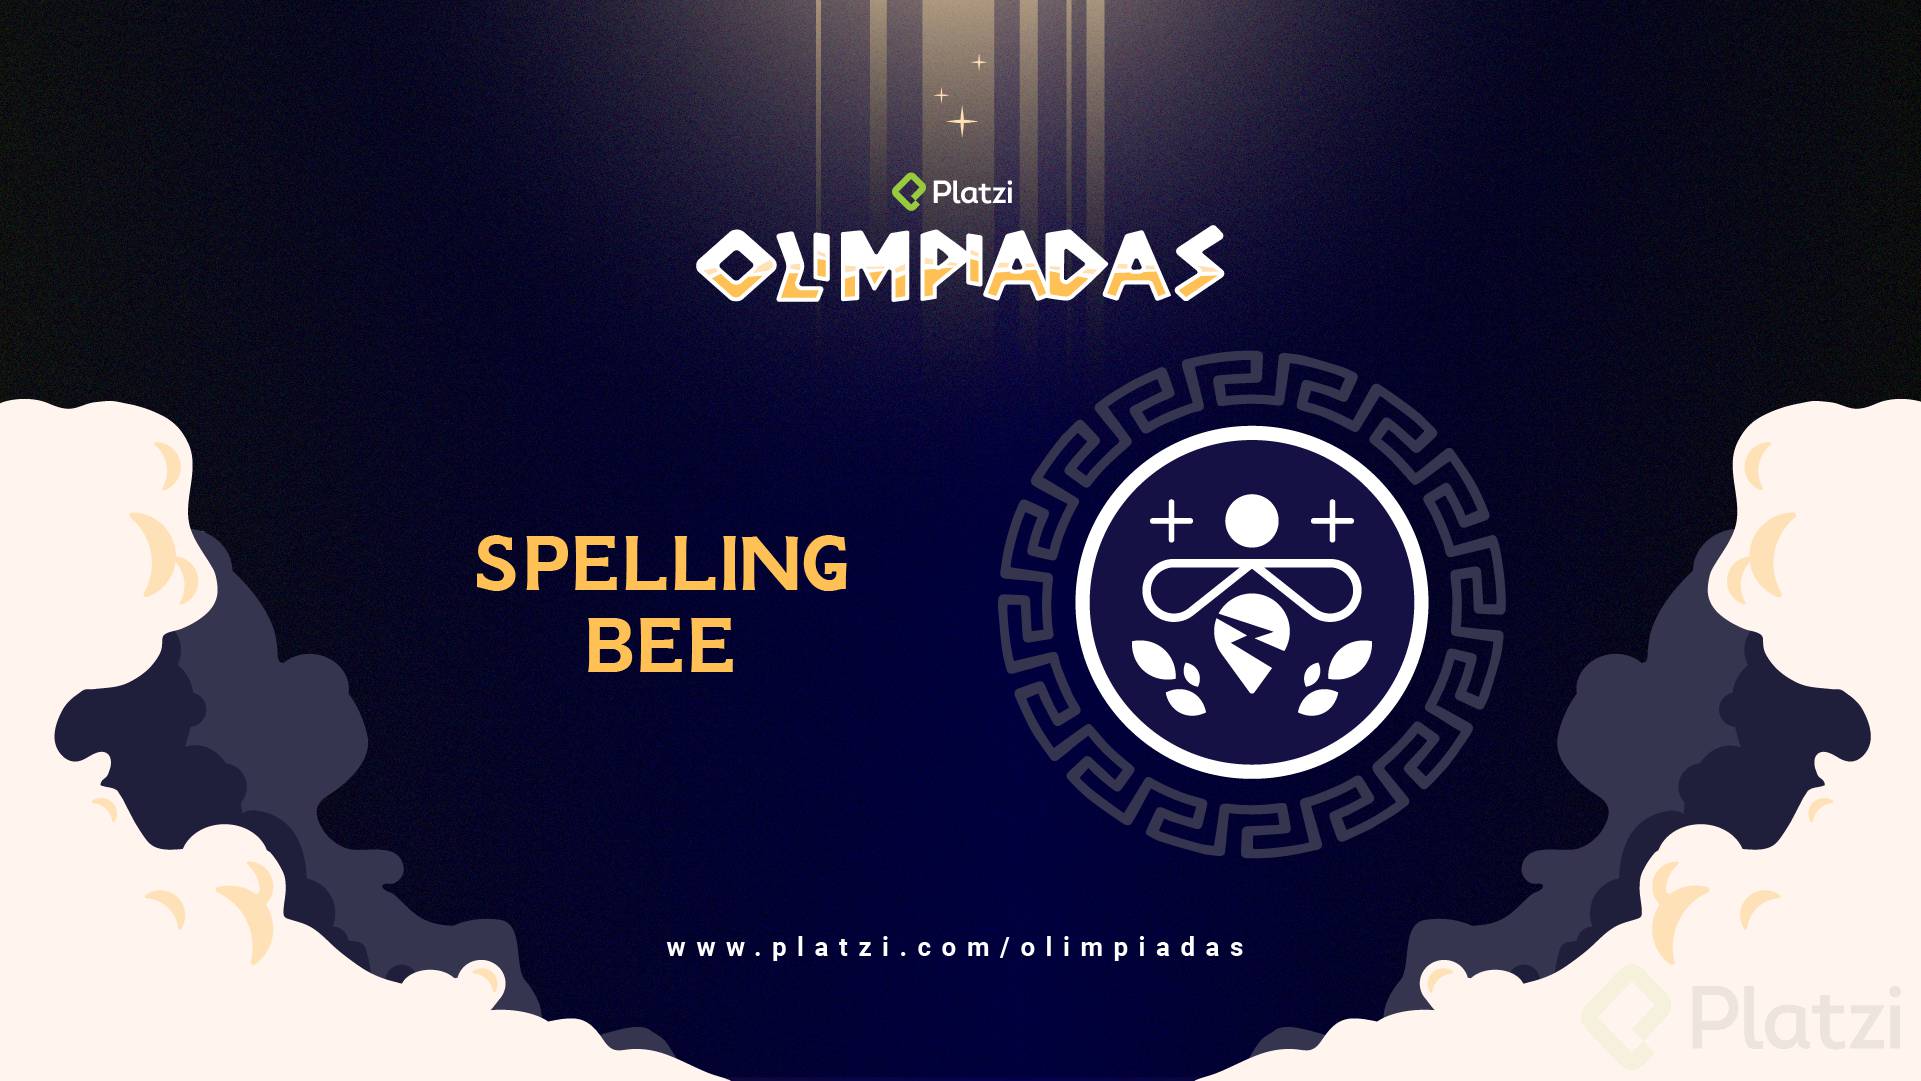 Olimpiadas_Spelling_Bee_Wallpaper.png